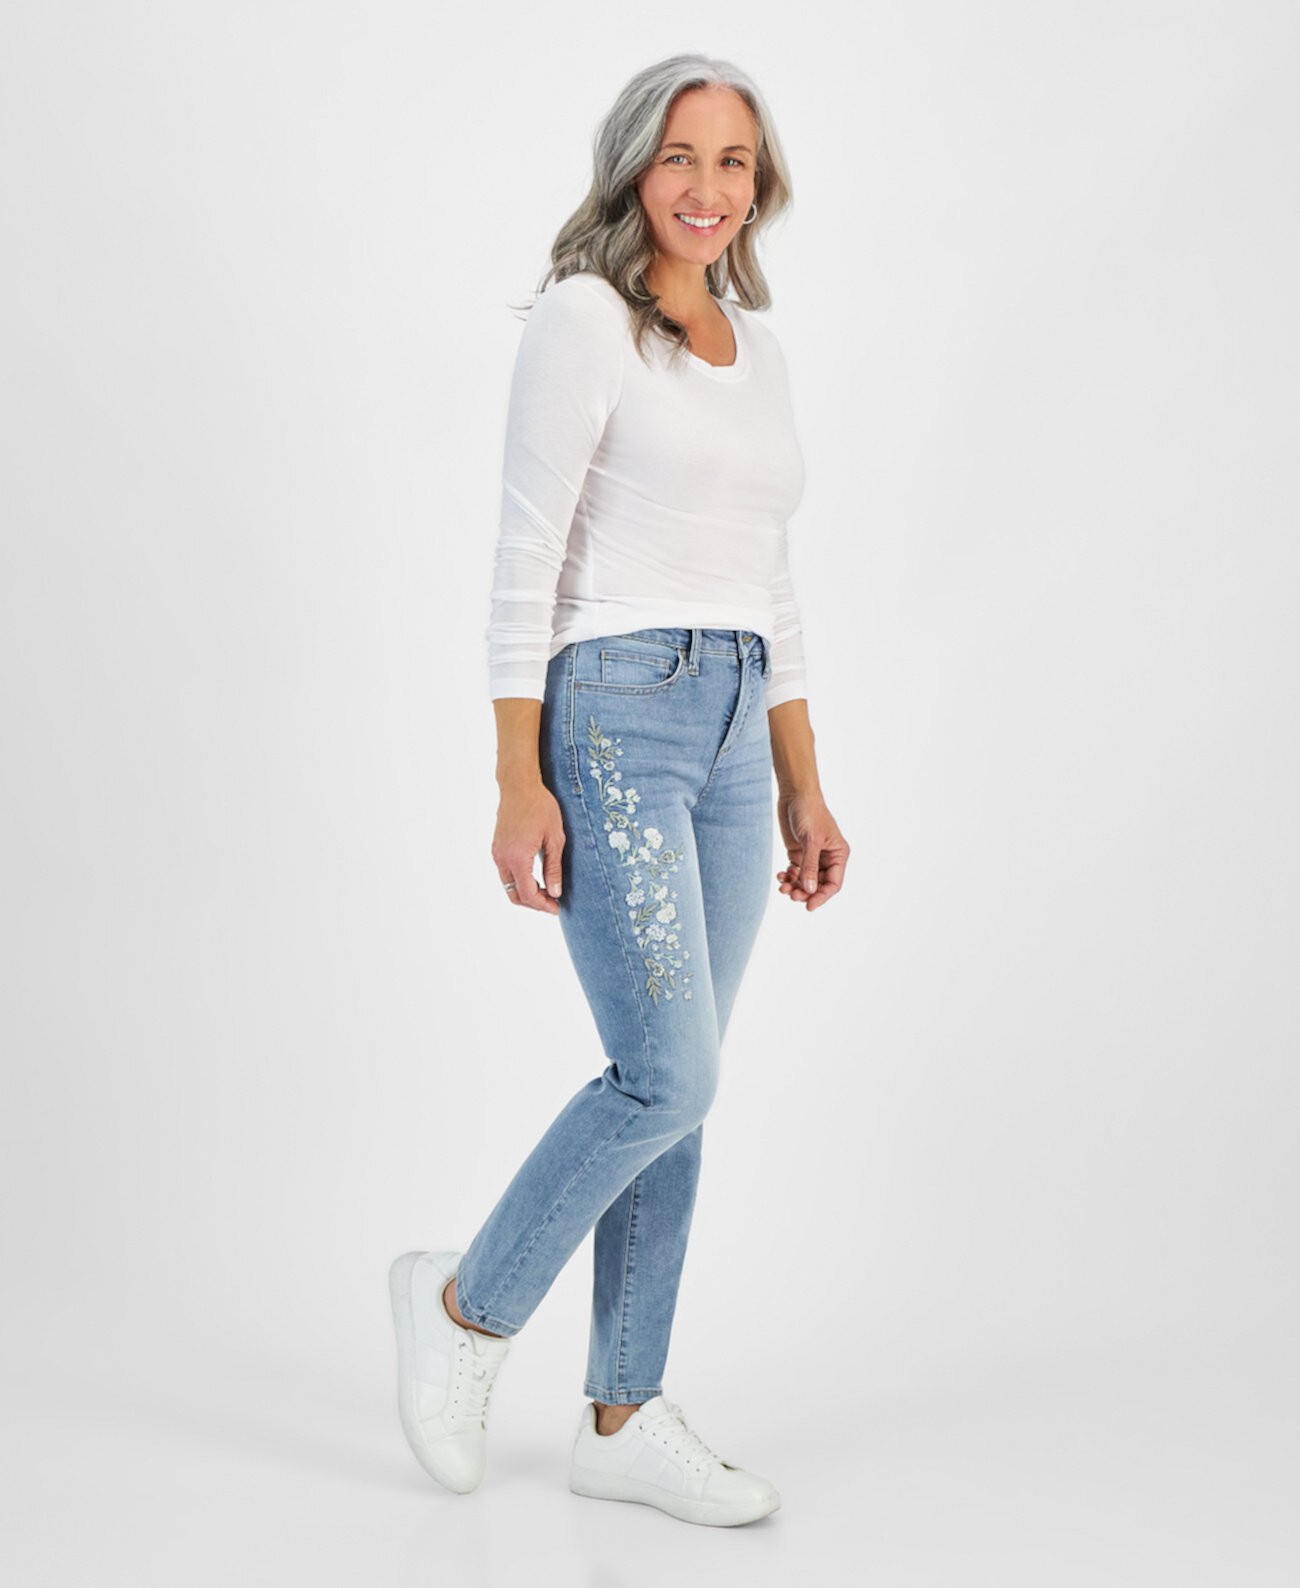 Натуральные прямые джинсы с высокой посадкой Petite, созданные для Macy's Style & Co